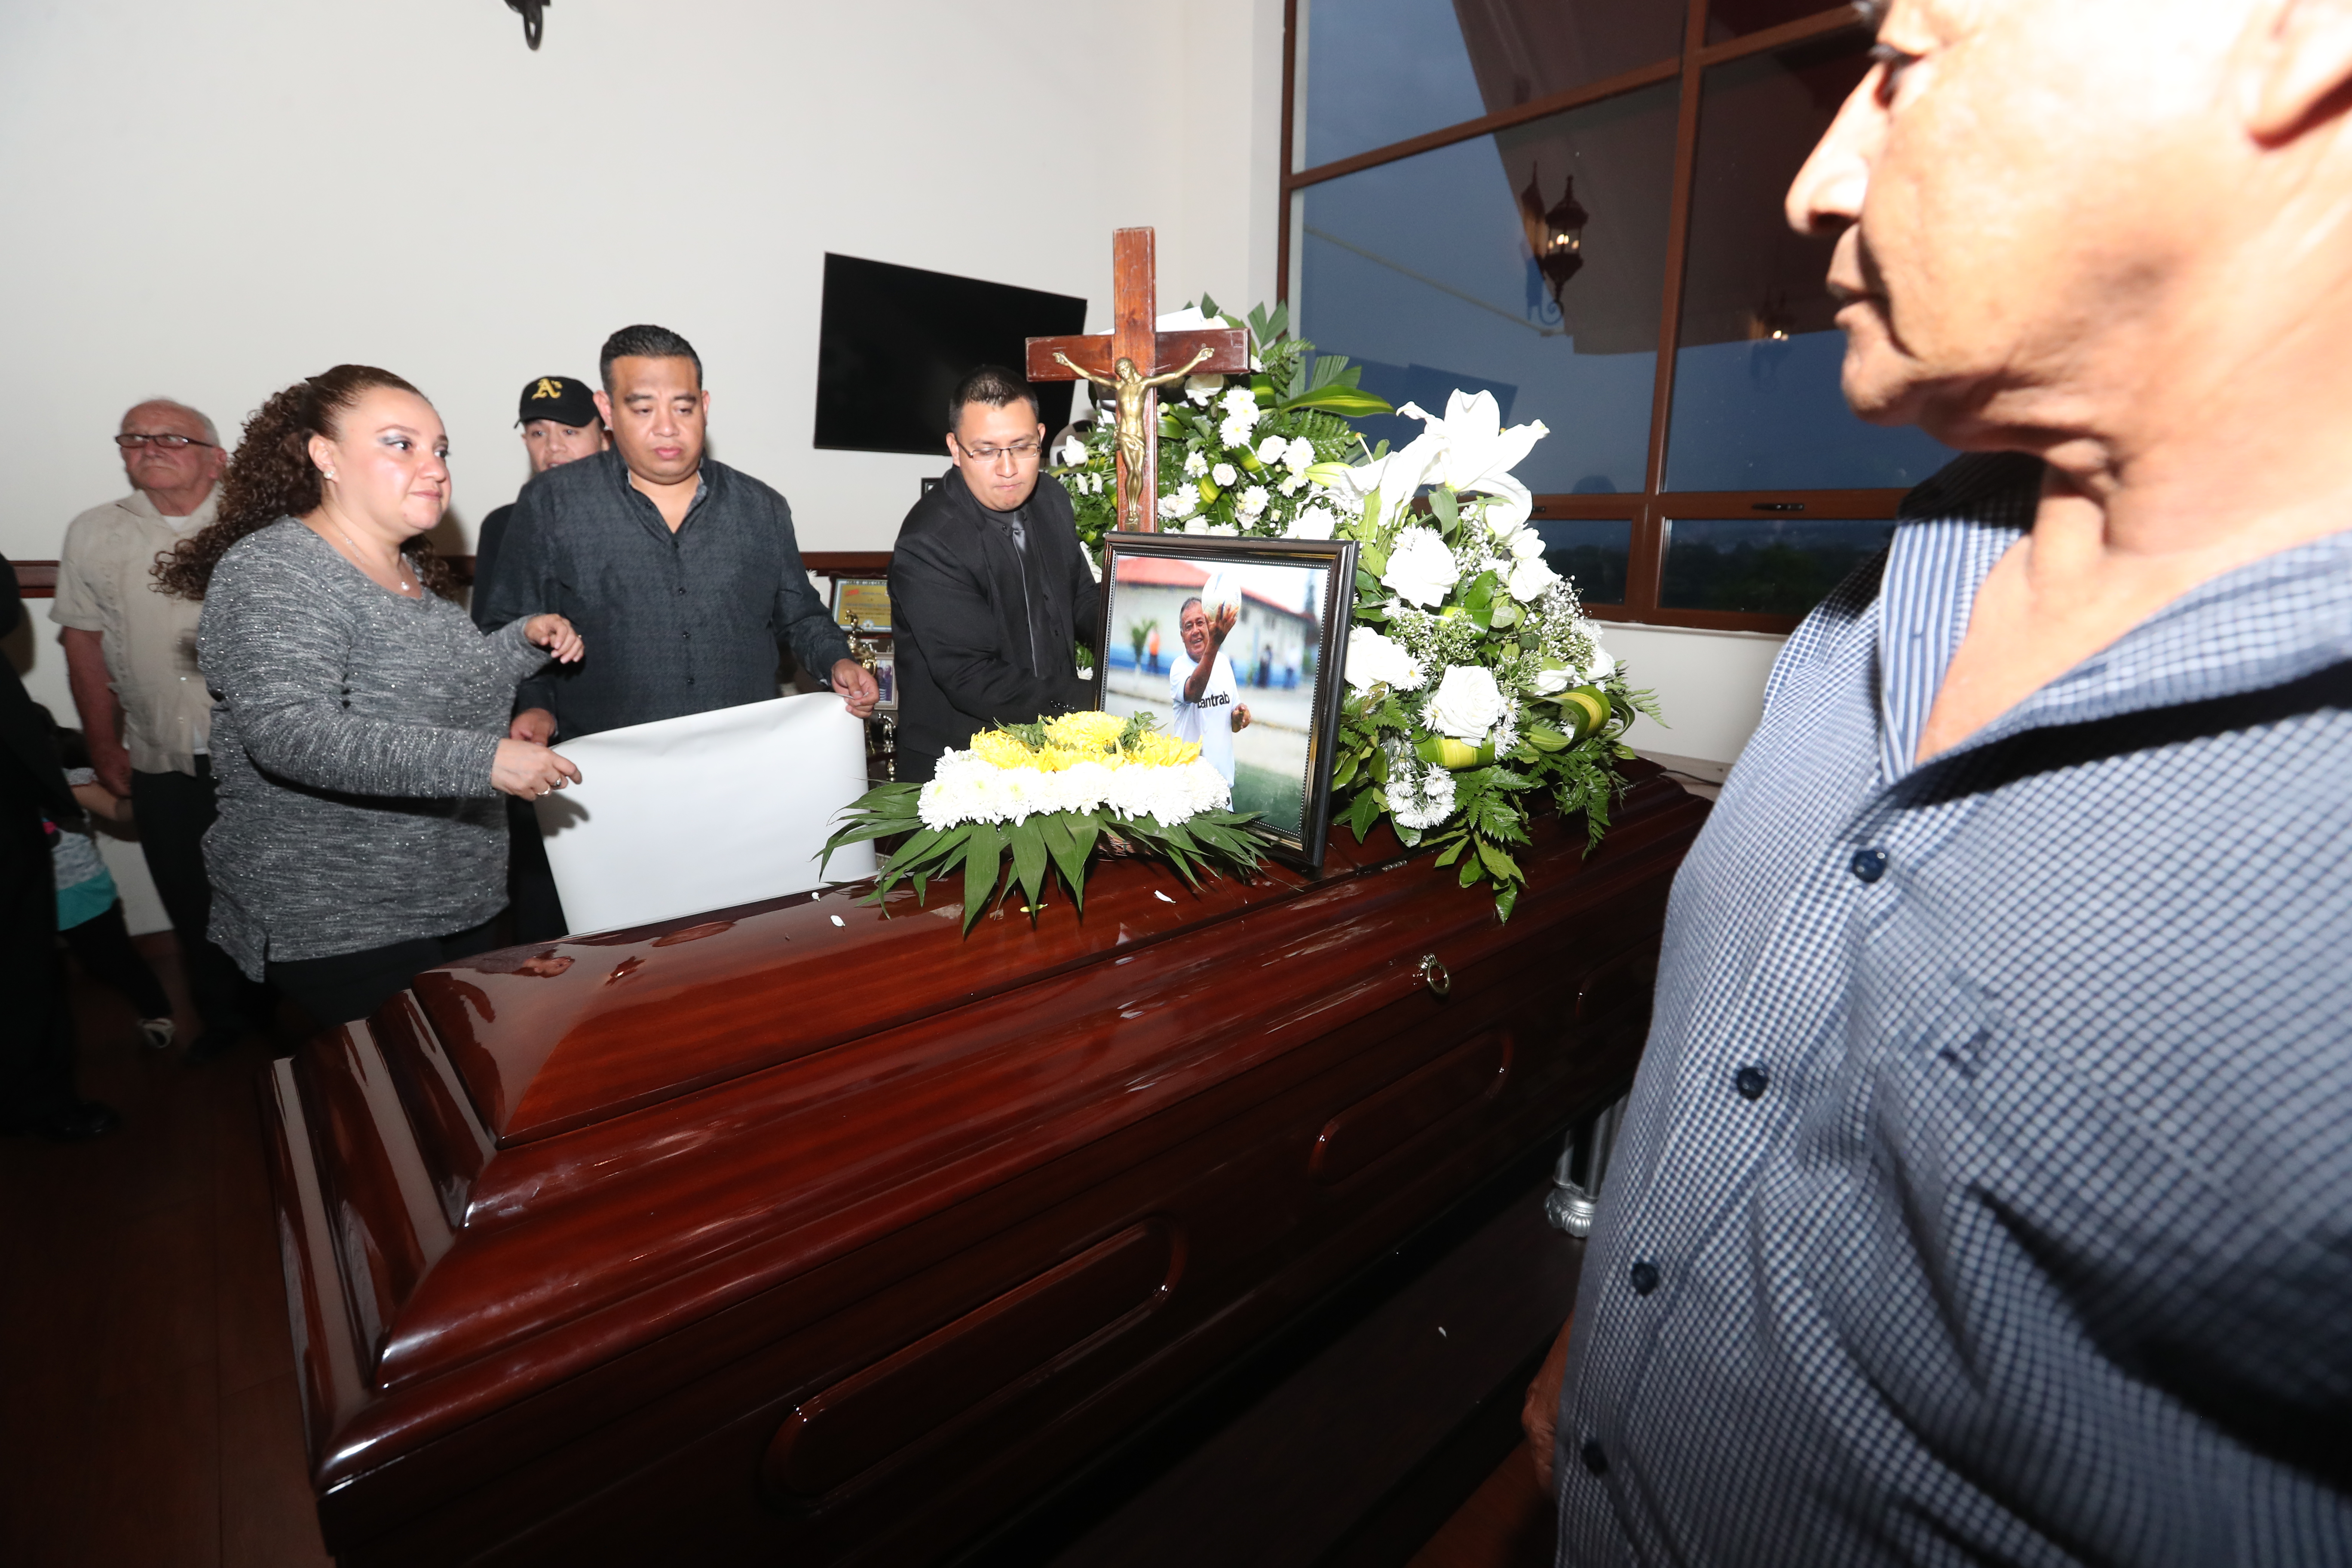 Familiares y amigos despidieron al Óscar Sánchez, quien falleció victima de una enfermedad del corazón. (Foto Prensa Libre: Francisco Sánchez).